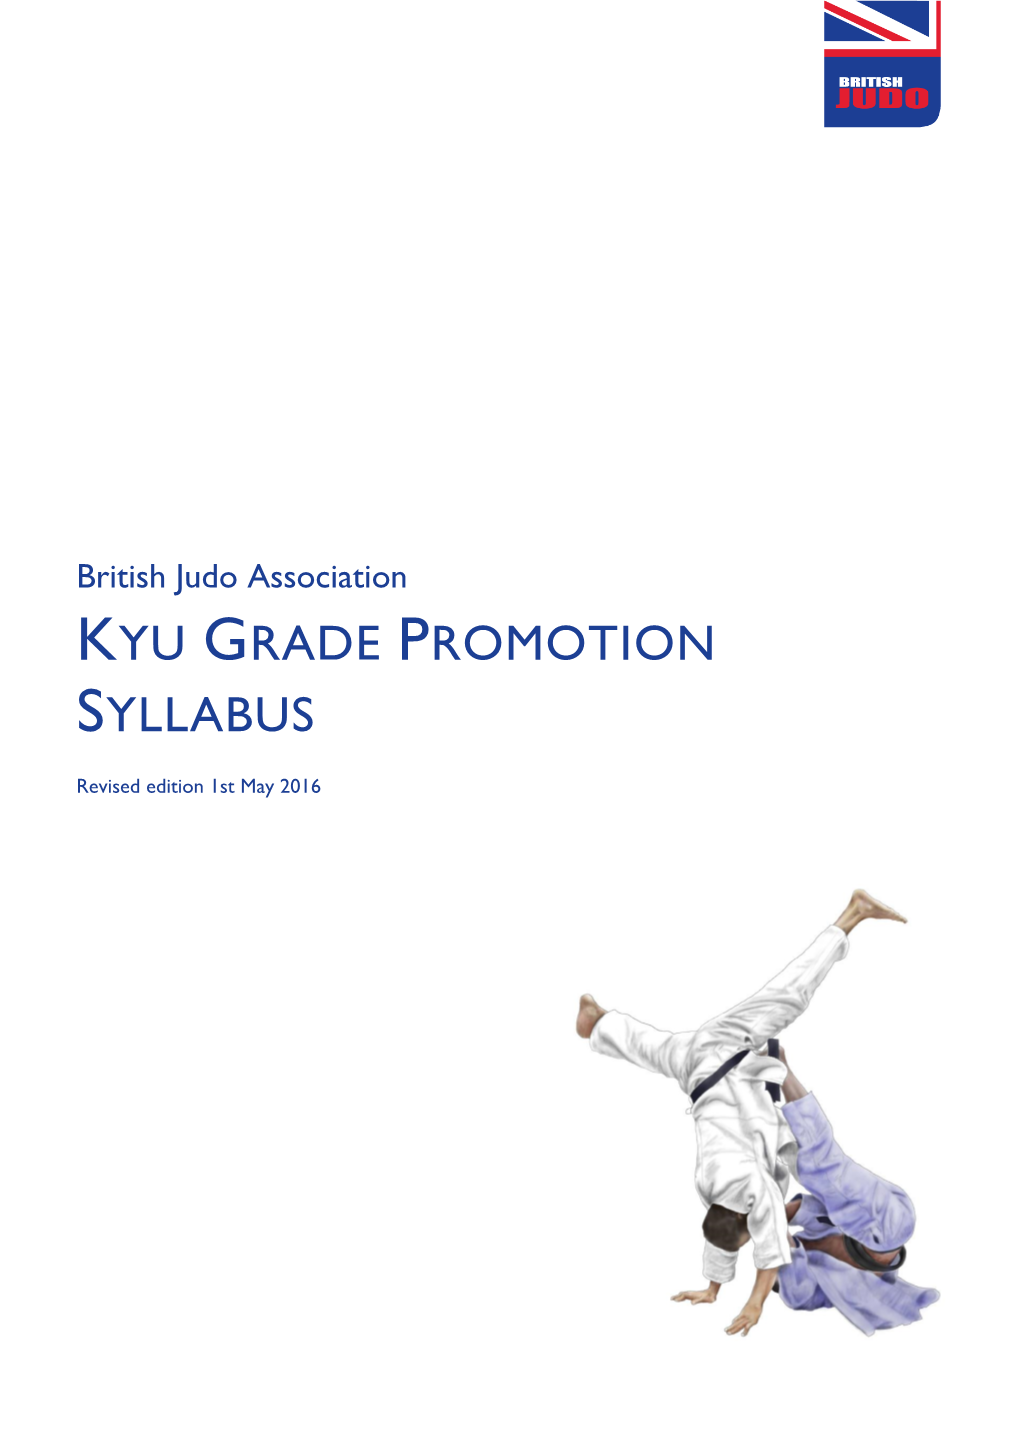 Kyu Grade Promotion Syllabus